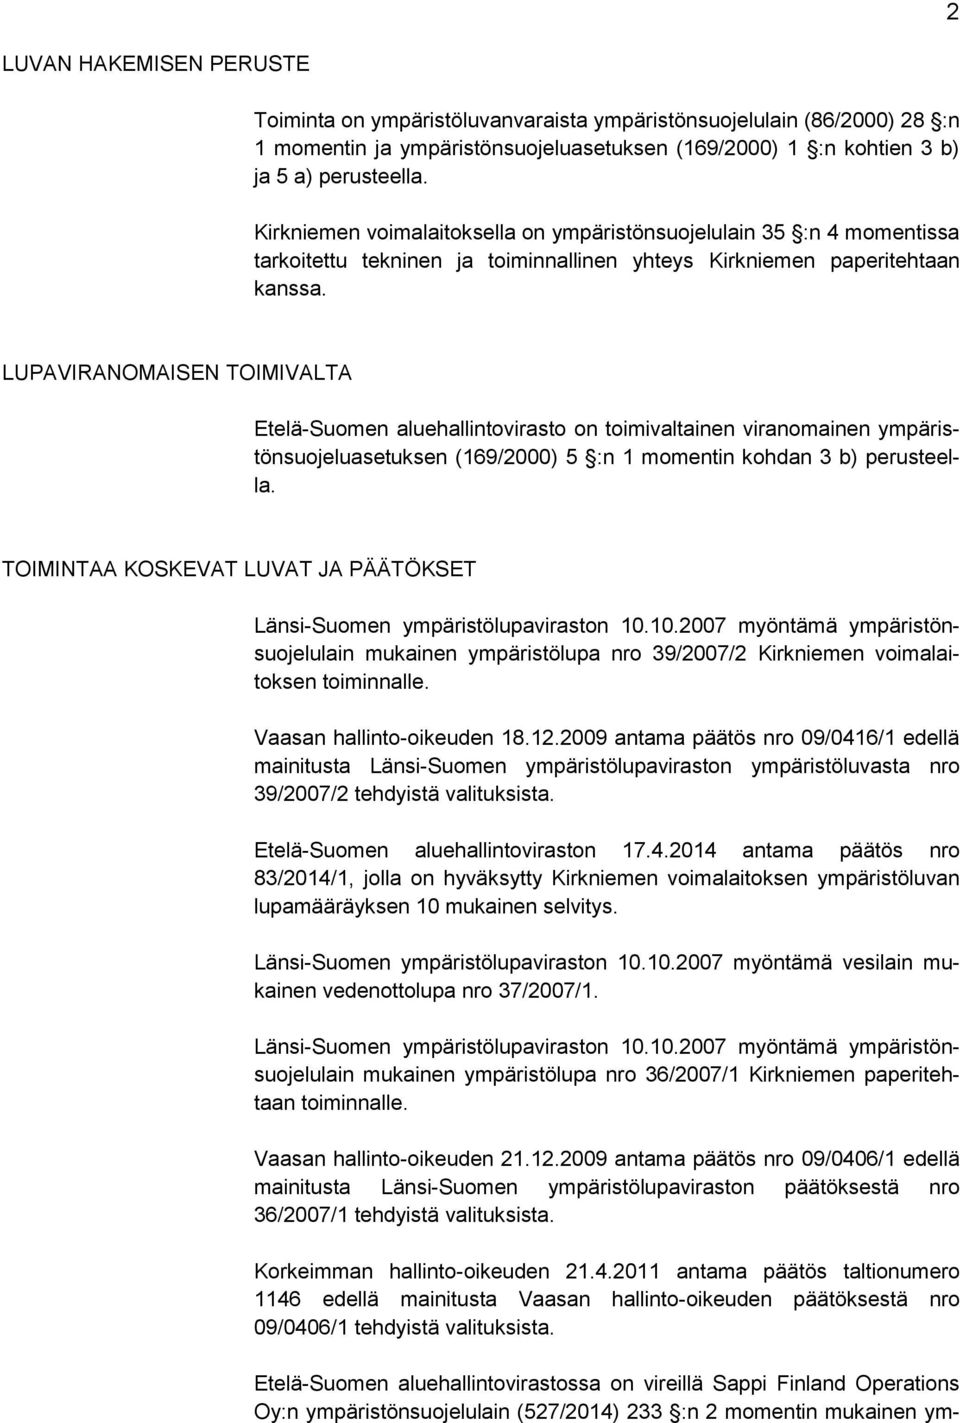 LUPAVIRANOMAISEN TOIMIVALTA Etelä-Suomen aluehallintovirasto on toimivaltainen viranomainen ympäristönsuojeluasetuksen (169/2000) 5 :n 1 momentin kohdan 3 b) perusteella.